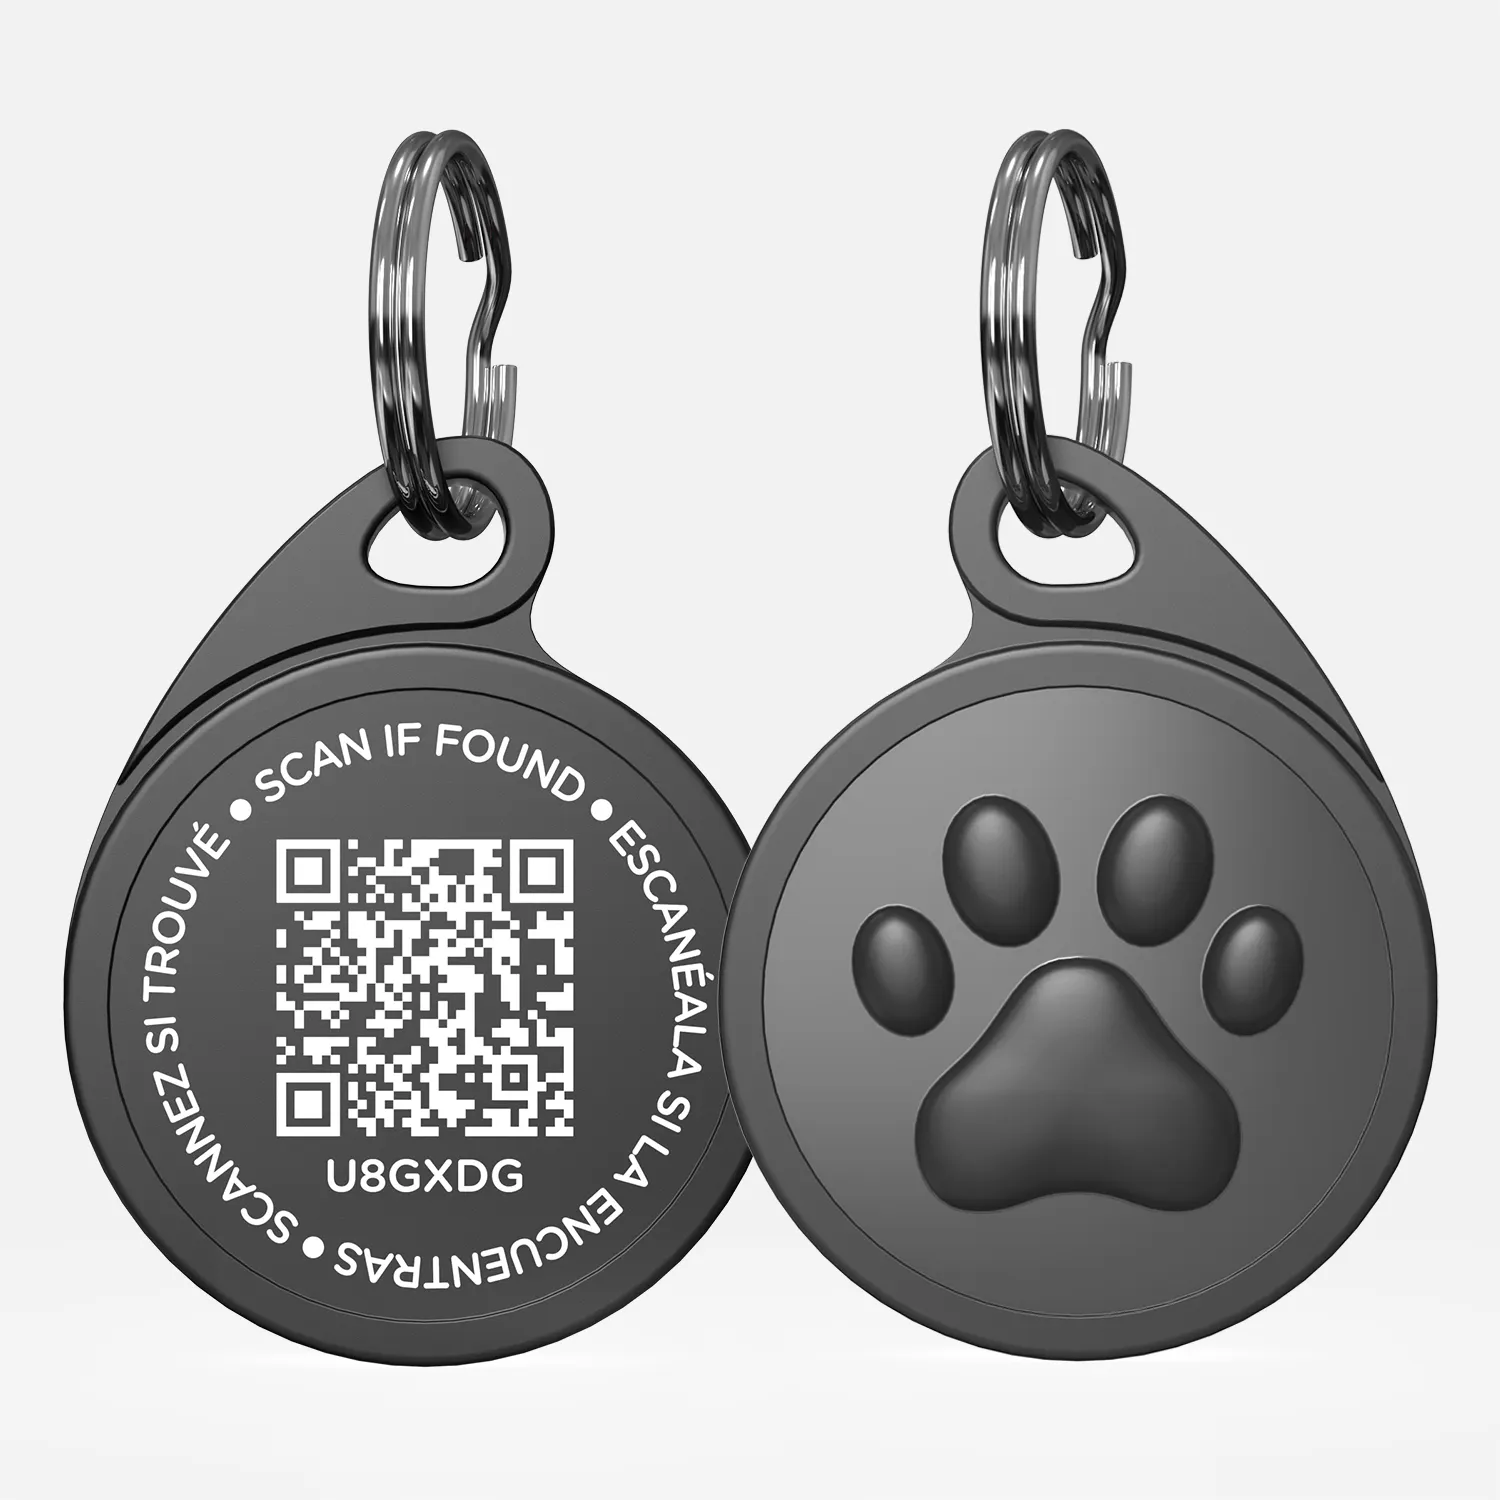 Etiqueta de identificación de perro mascota con código QR duradero barato personalizado